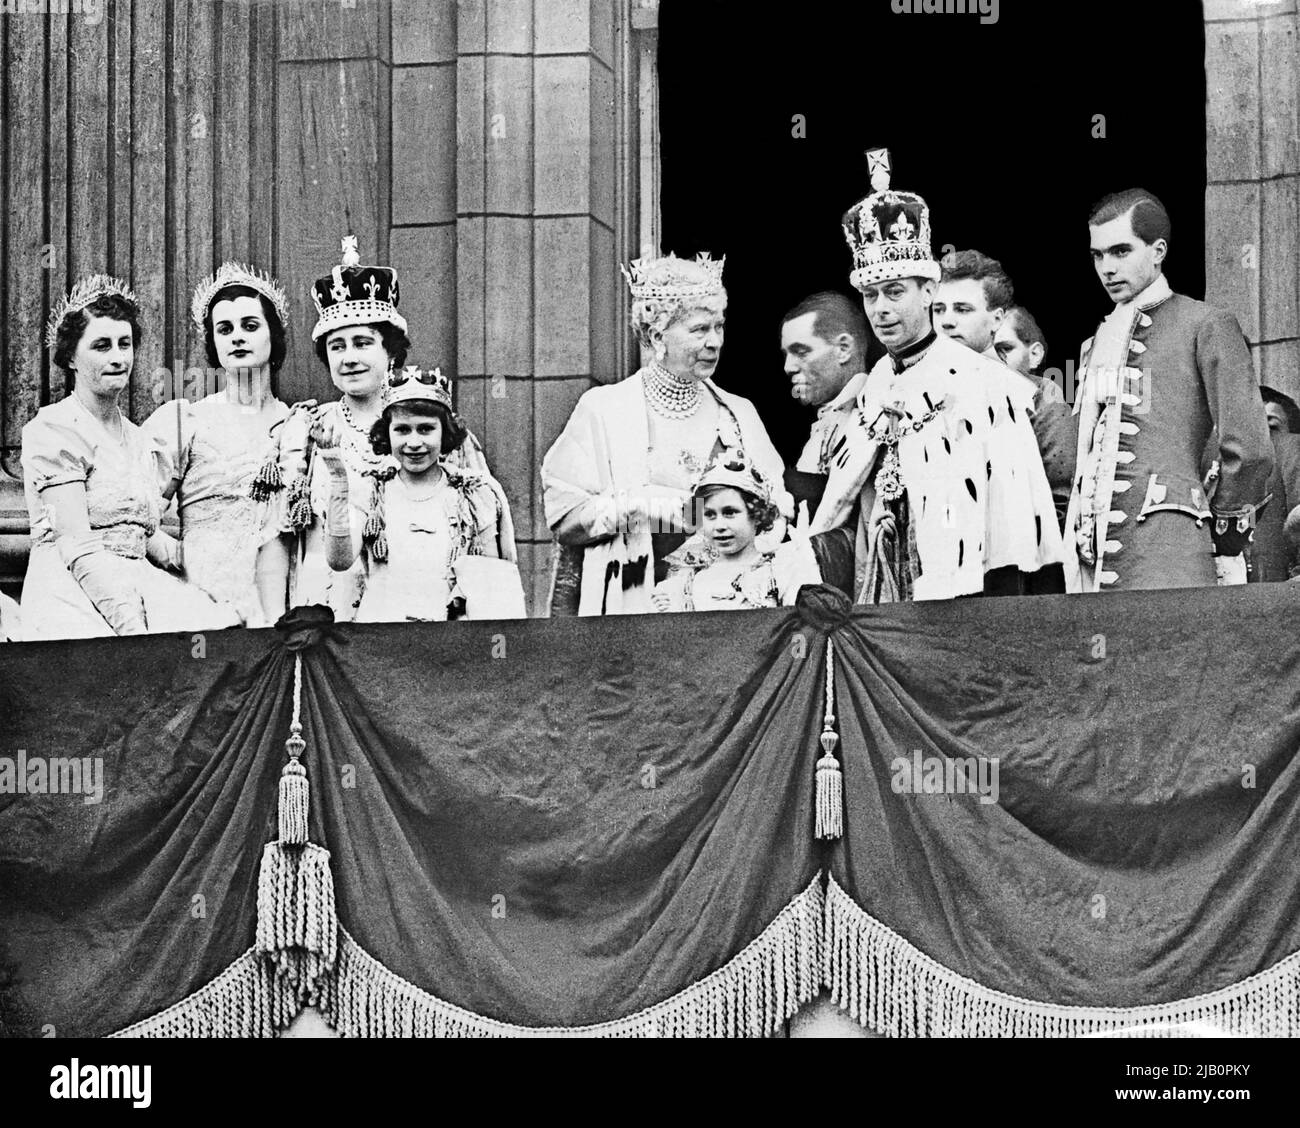 La Reina Isabel (2nd-L, futura Reina Madre), su hija la Princesa Isabel (4th-L, futura Reina Isabel II), la Reina María (C), la Princesa Margarita (5th-L) y el Rey Jorge VI (R), posan en el balcón del Palacio de Buckingham el 12 de mayo de 1937 Foto de stock